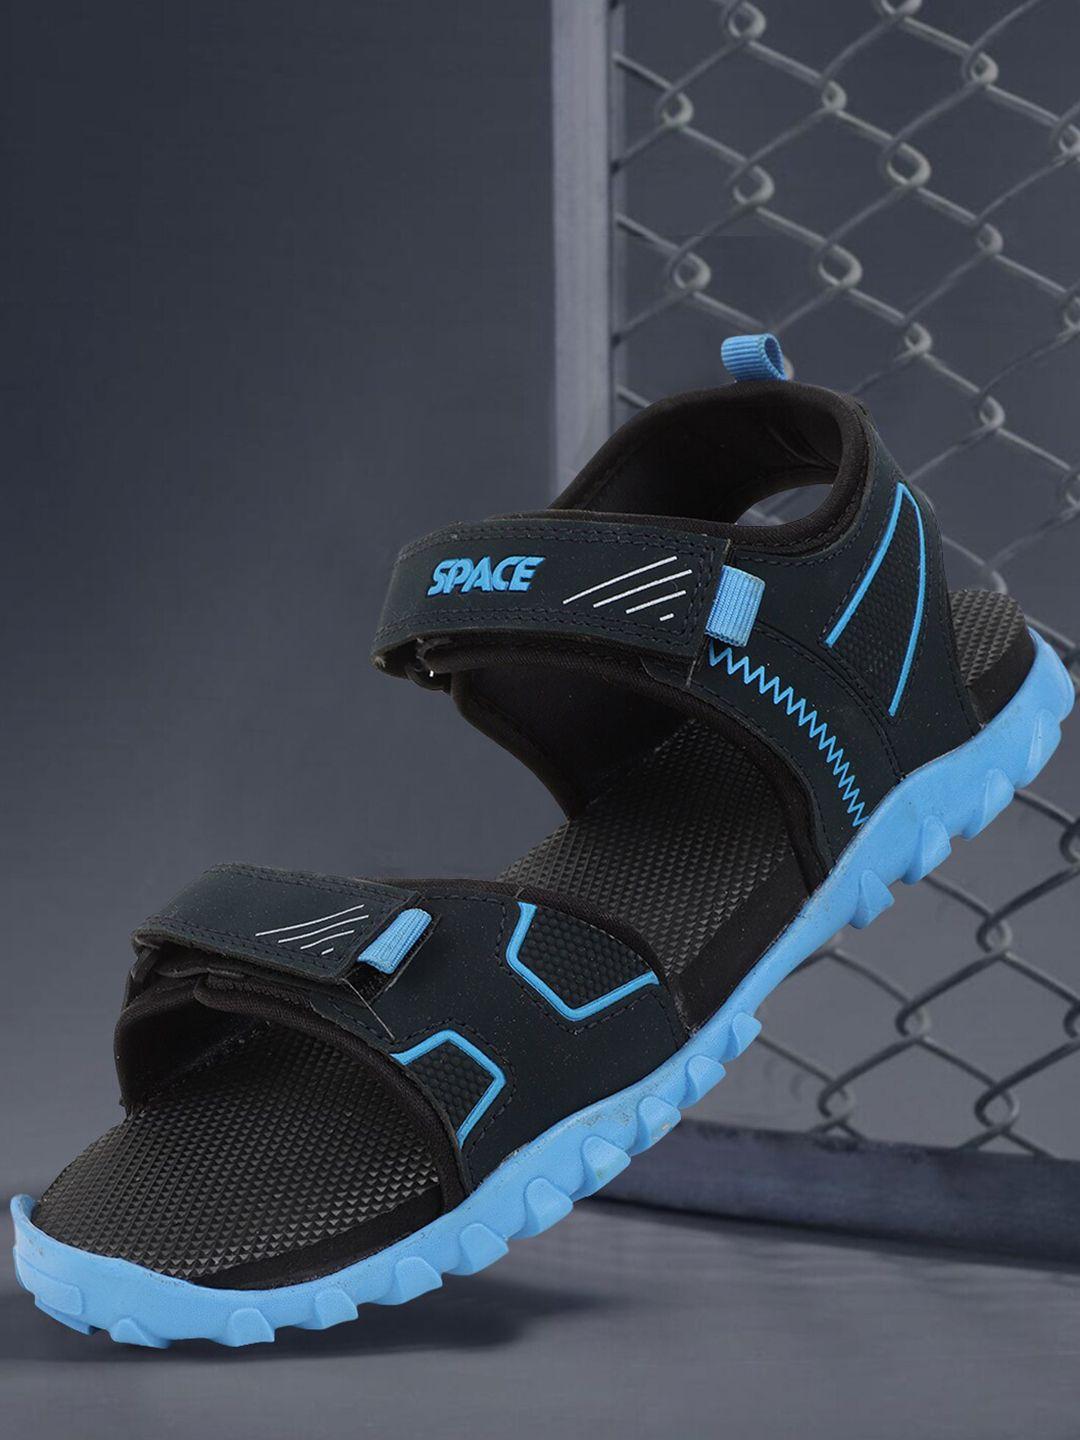 space men navy blue & blue sports sandals